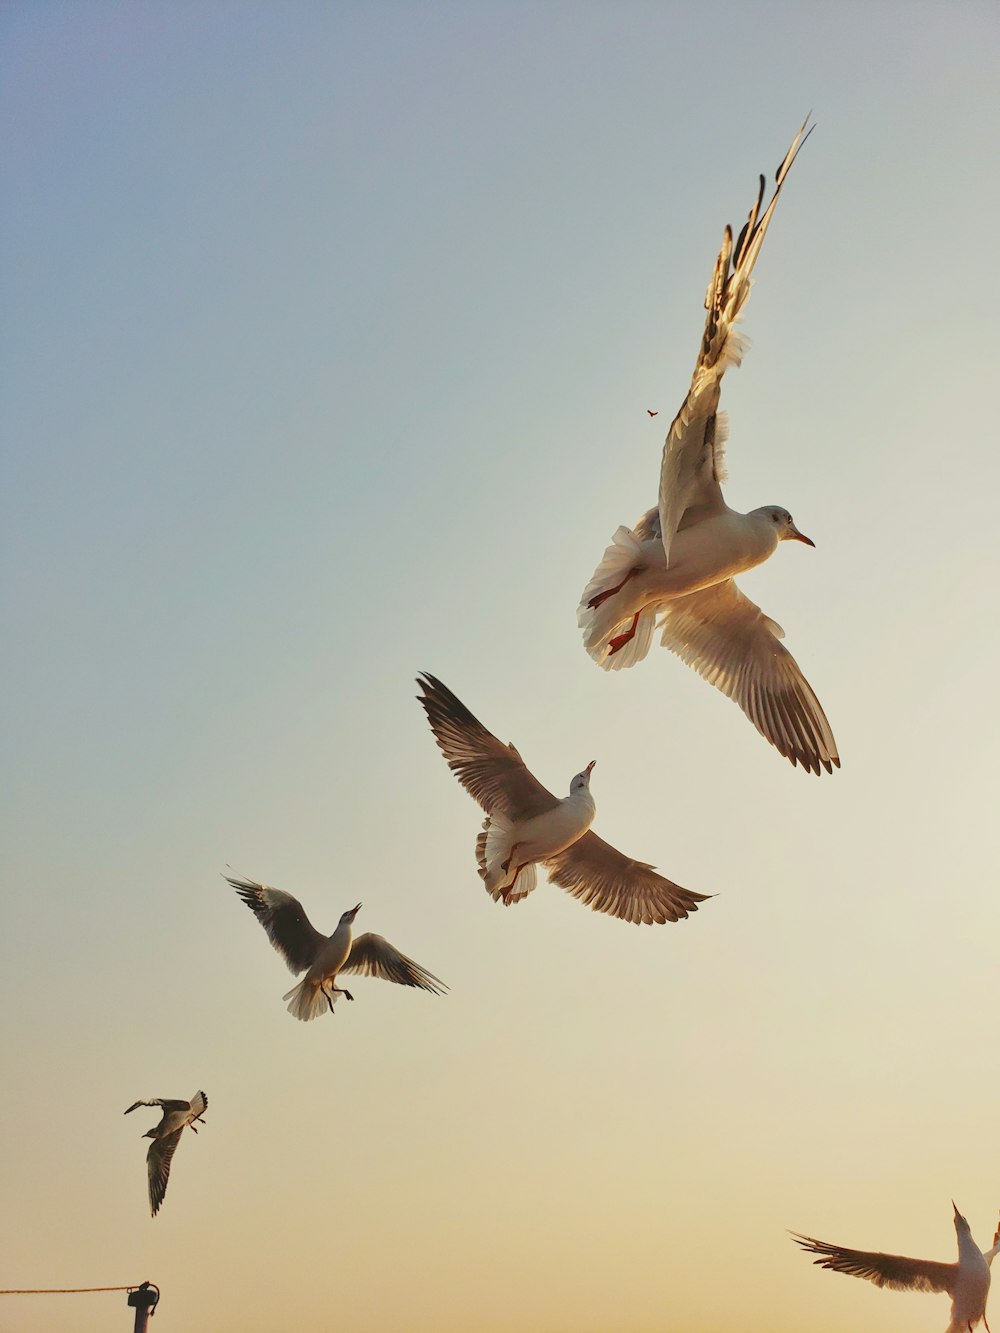 Tiefwinkelfotografie des Schwarms fliegender Möwen während des Tages